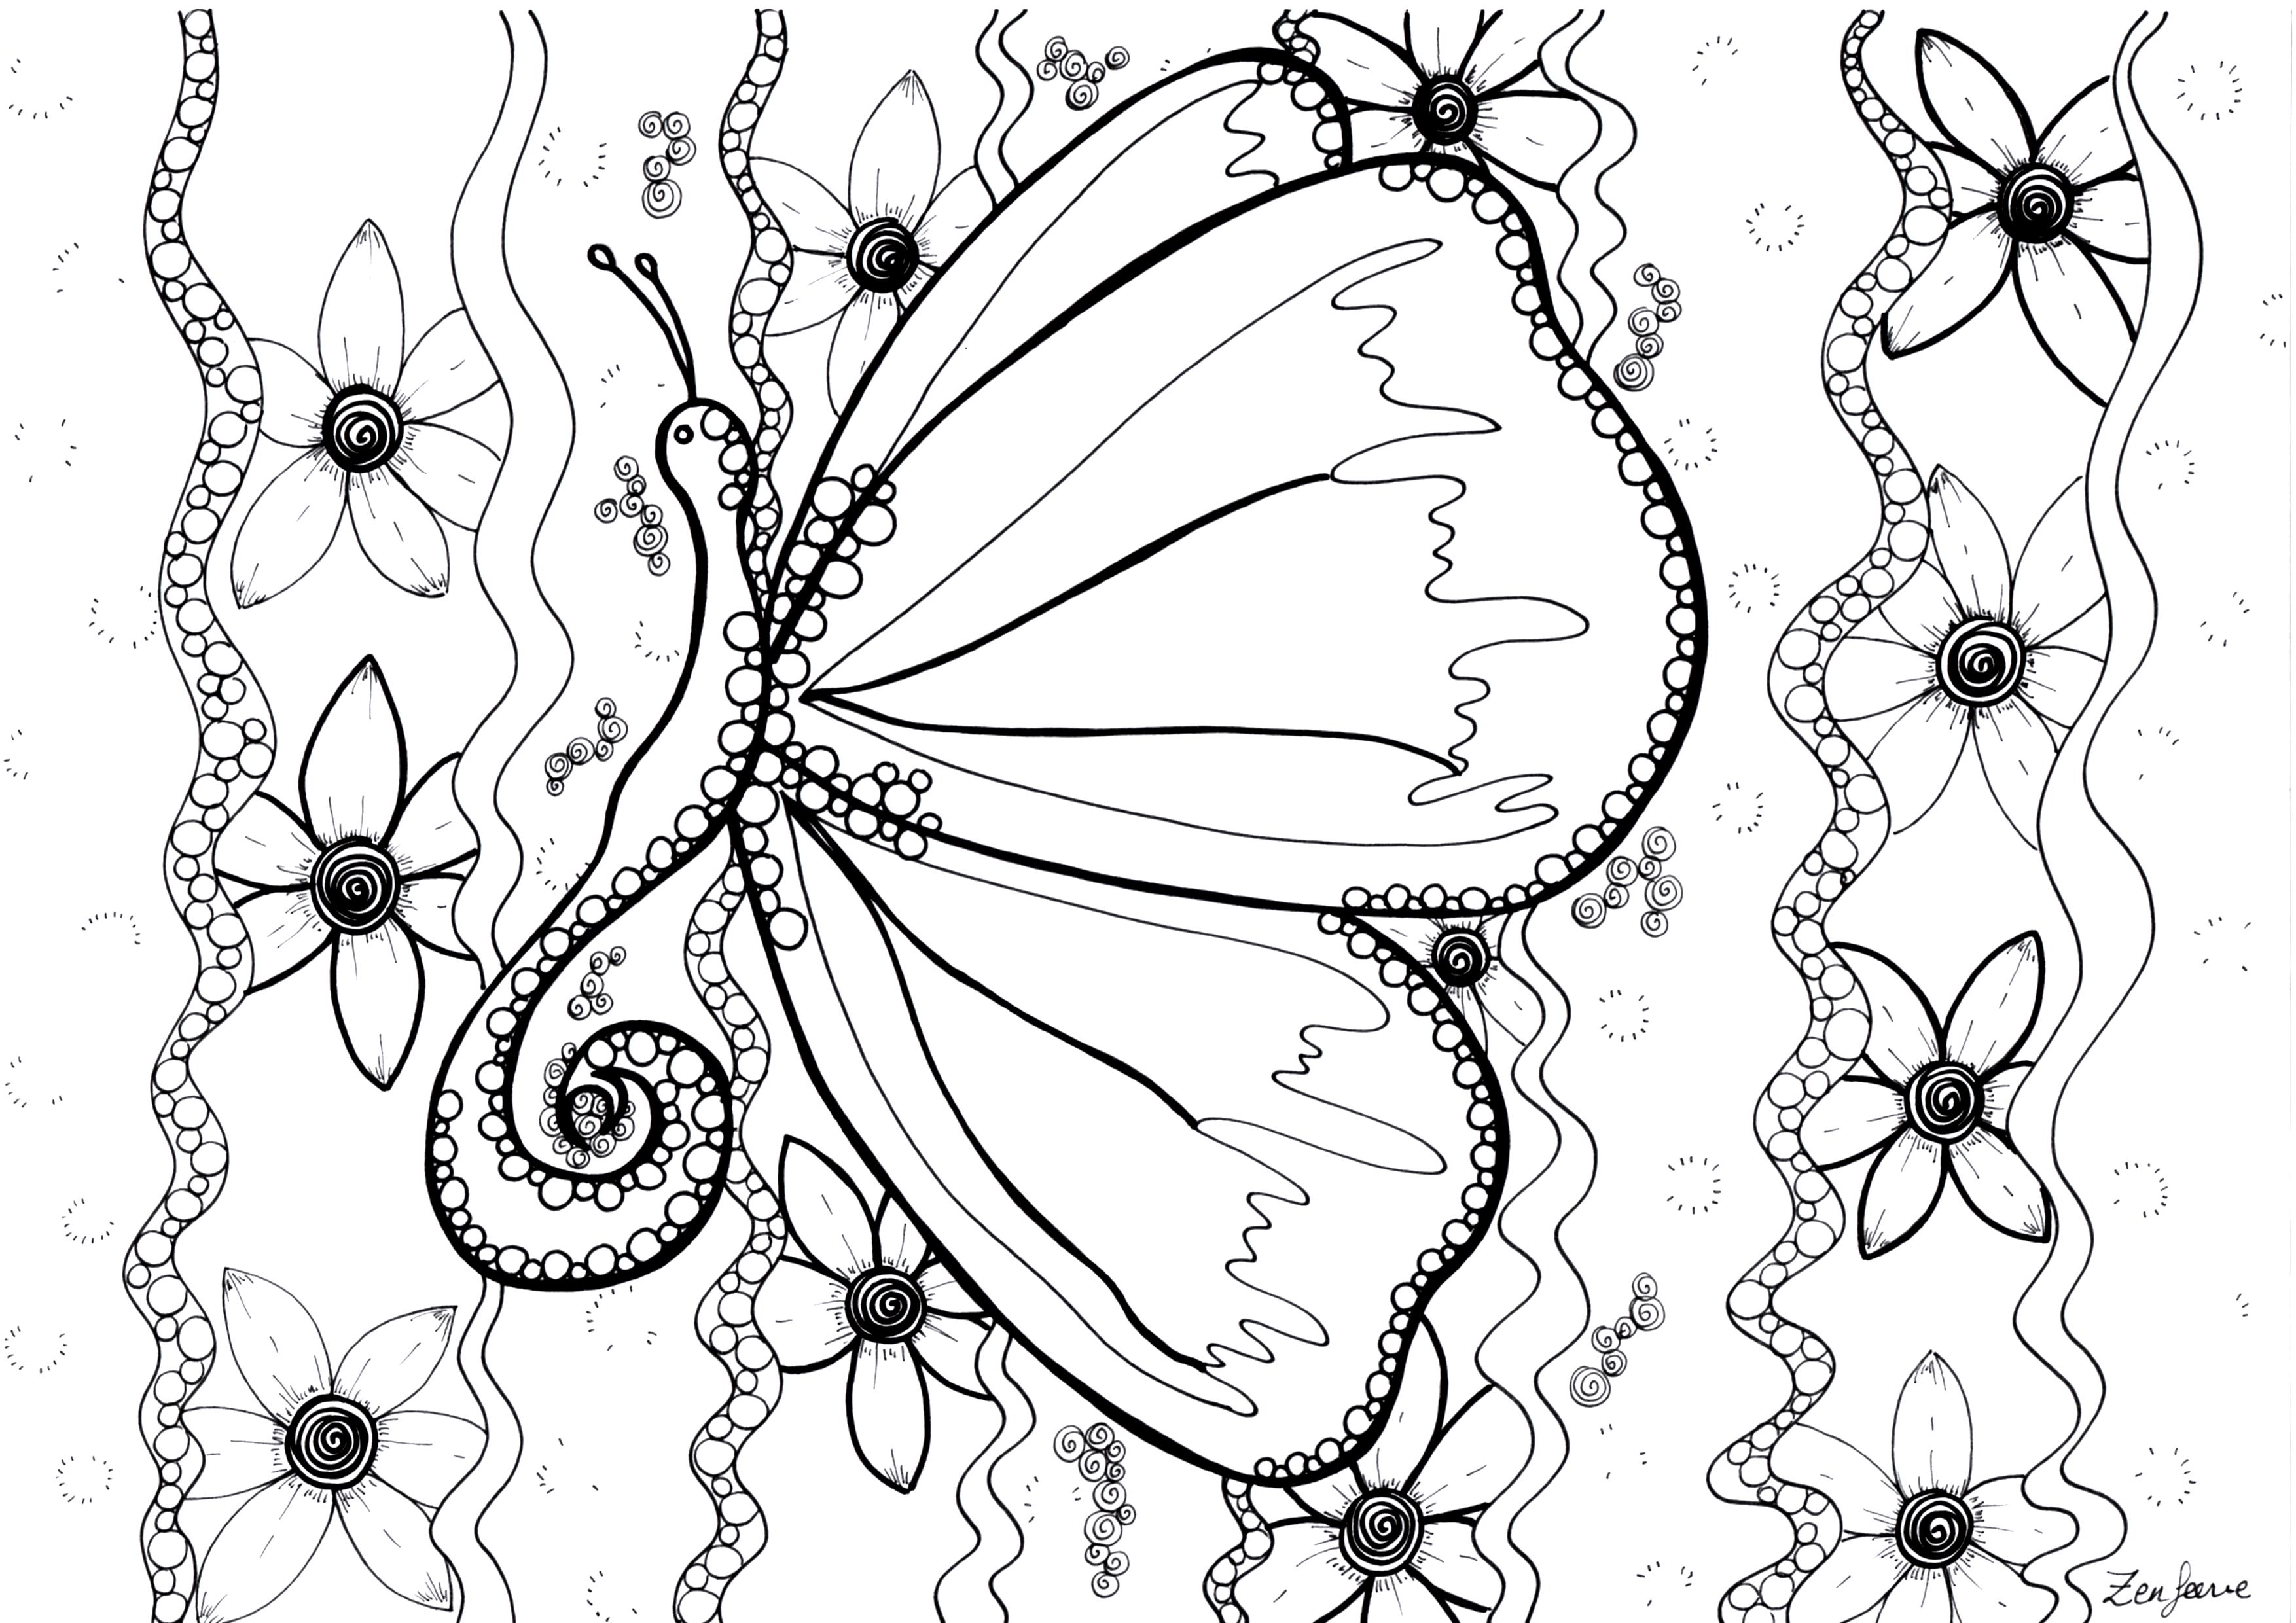 Desenhos simples grátis para colorir de Zentangle, Artista : Zen Féérie